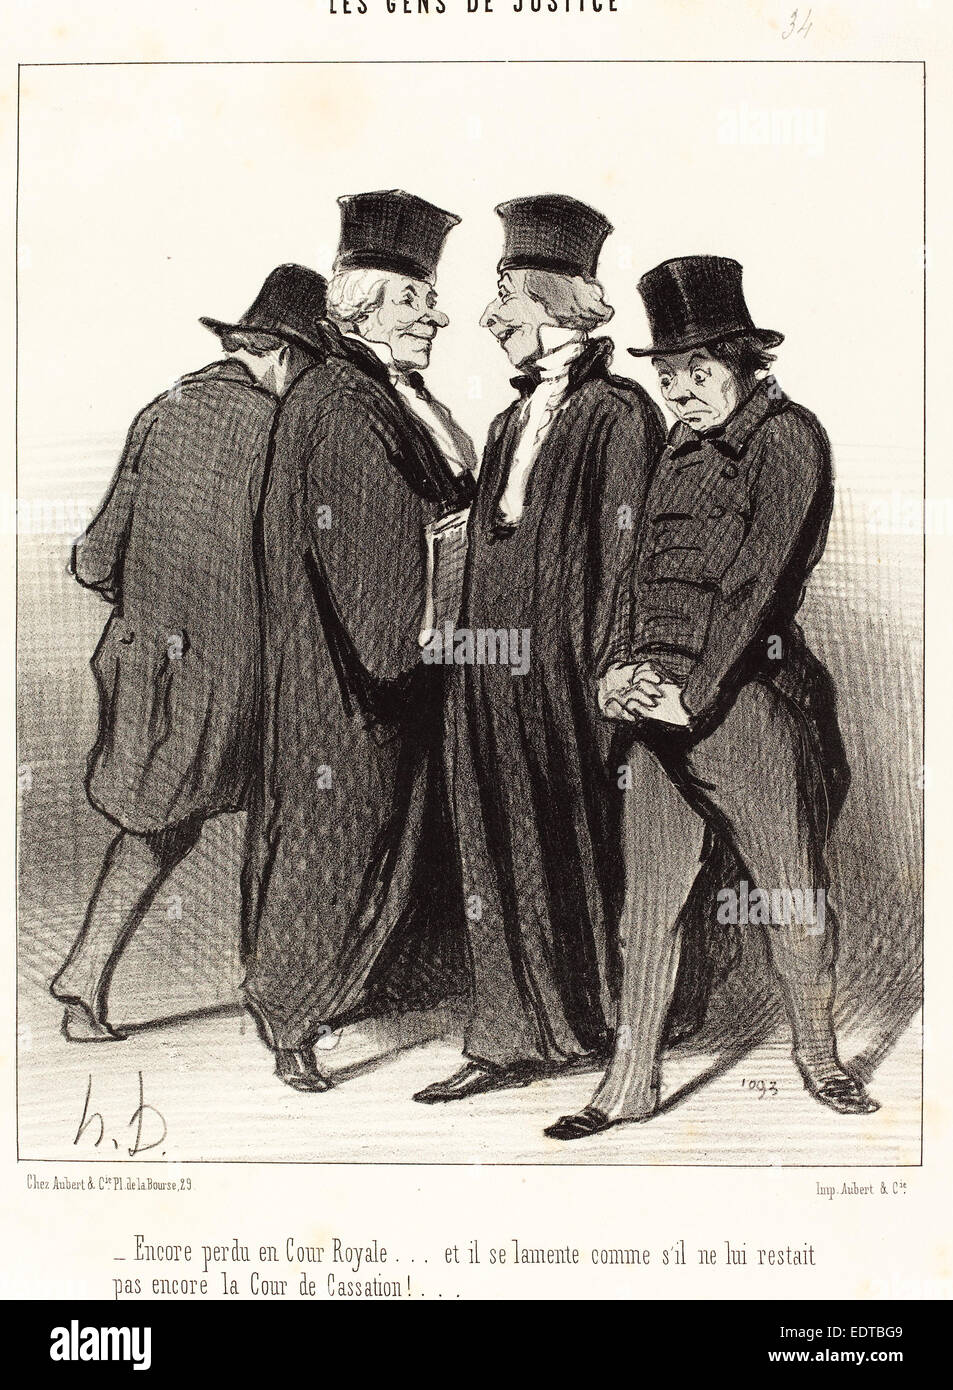 Honoré Daumier (French, 1808 - 1879), Encore perdu en Cour Royale et il se lamente, 1848, lithograph Stock Photo